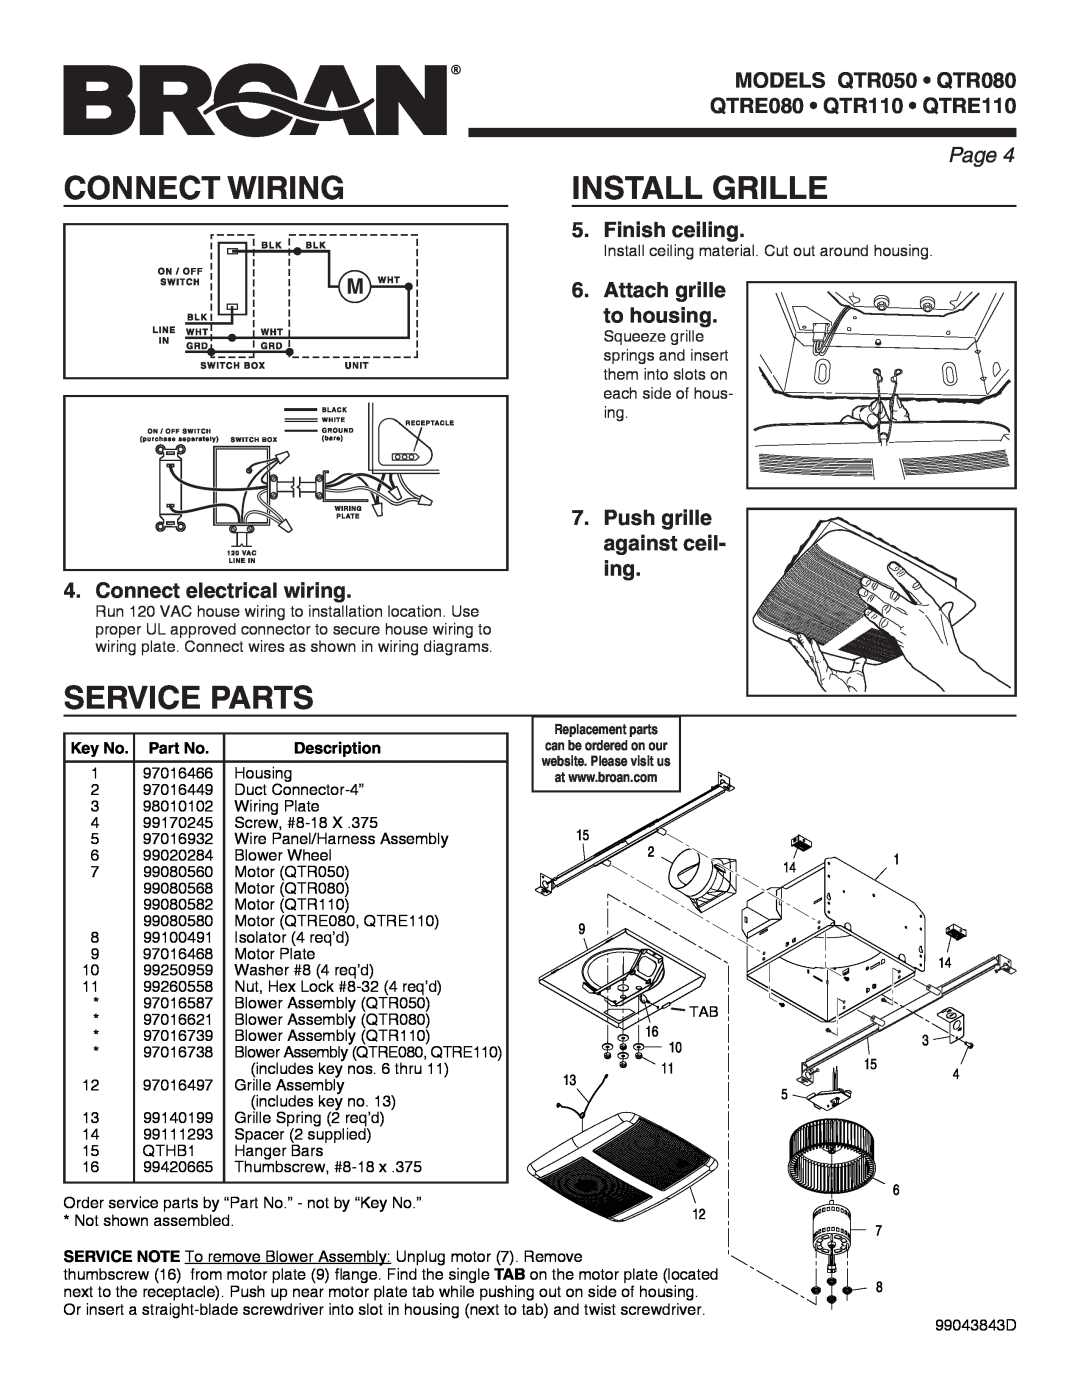 Broan QTR050 warranty Connect Wiring, Install Grille, Service Parts, MODELS qtr050 QTR080, QTRE080 QTR110 QTRE110, Page  